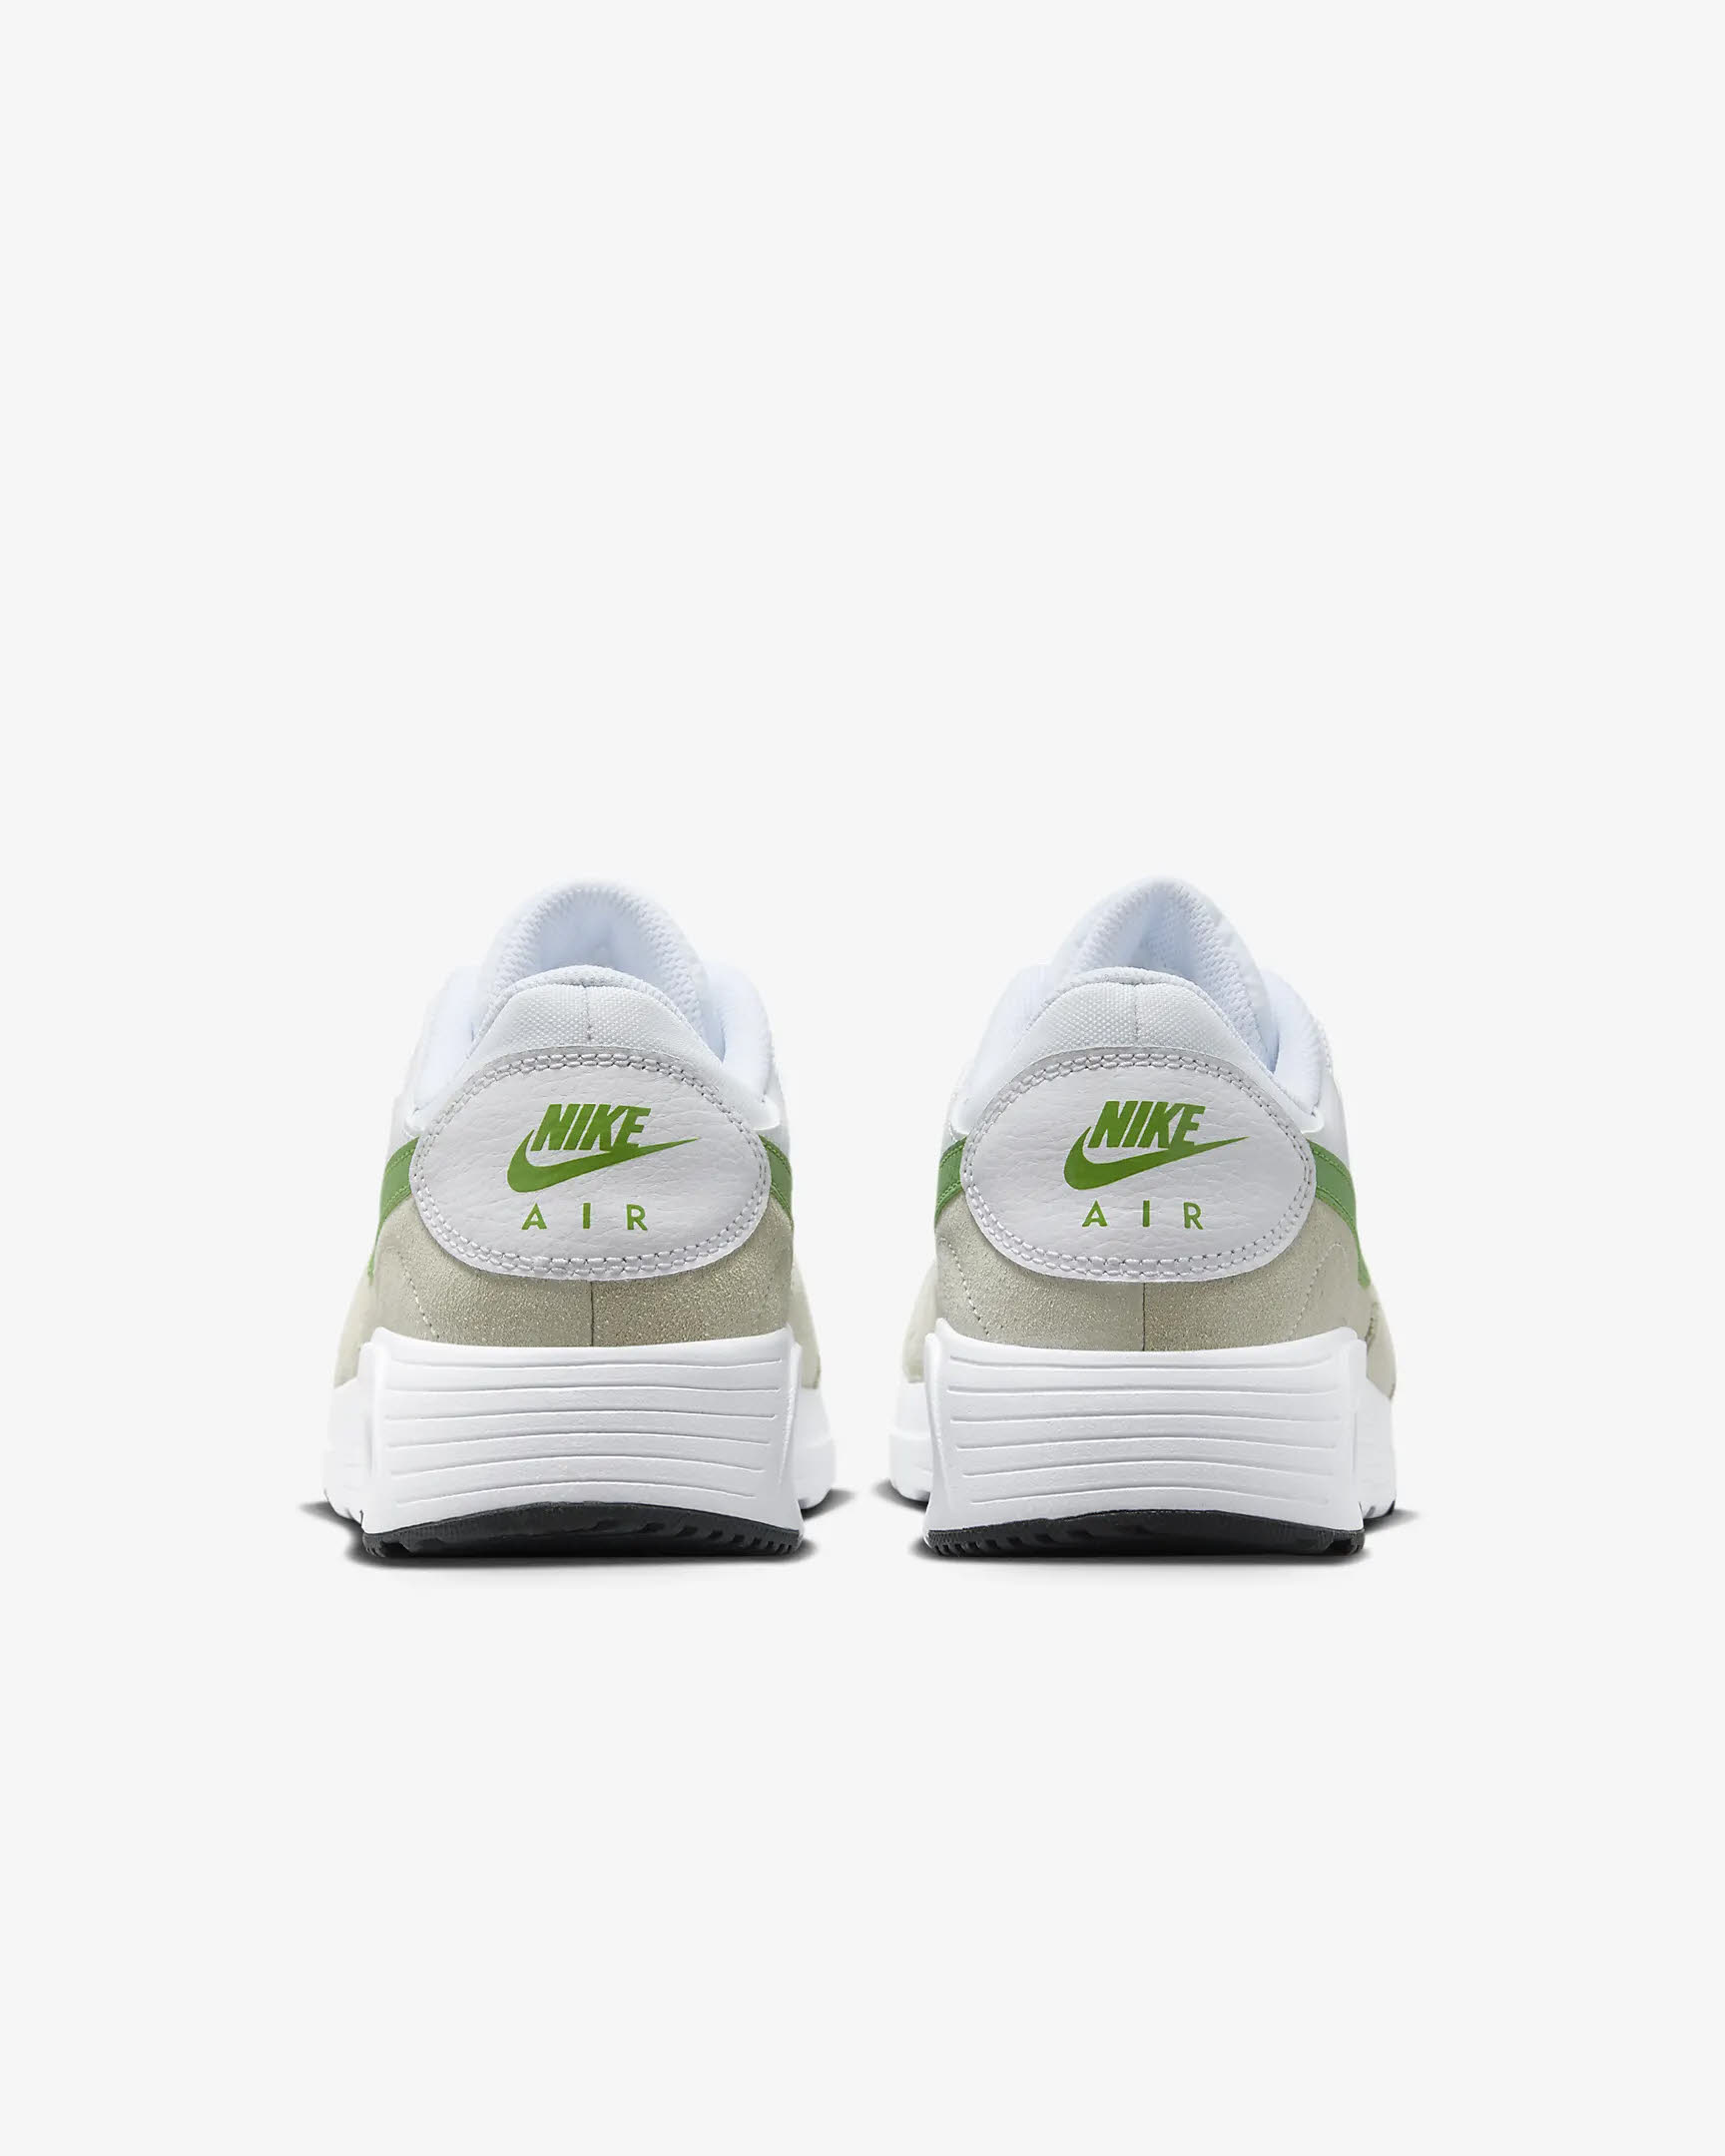 Nike Air Max SC Damen Workout-Schuhe Trainingsschuhe grün